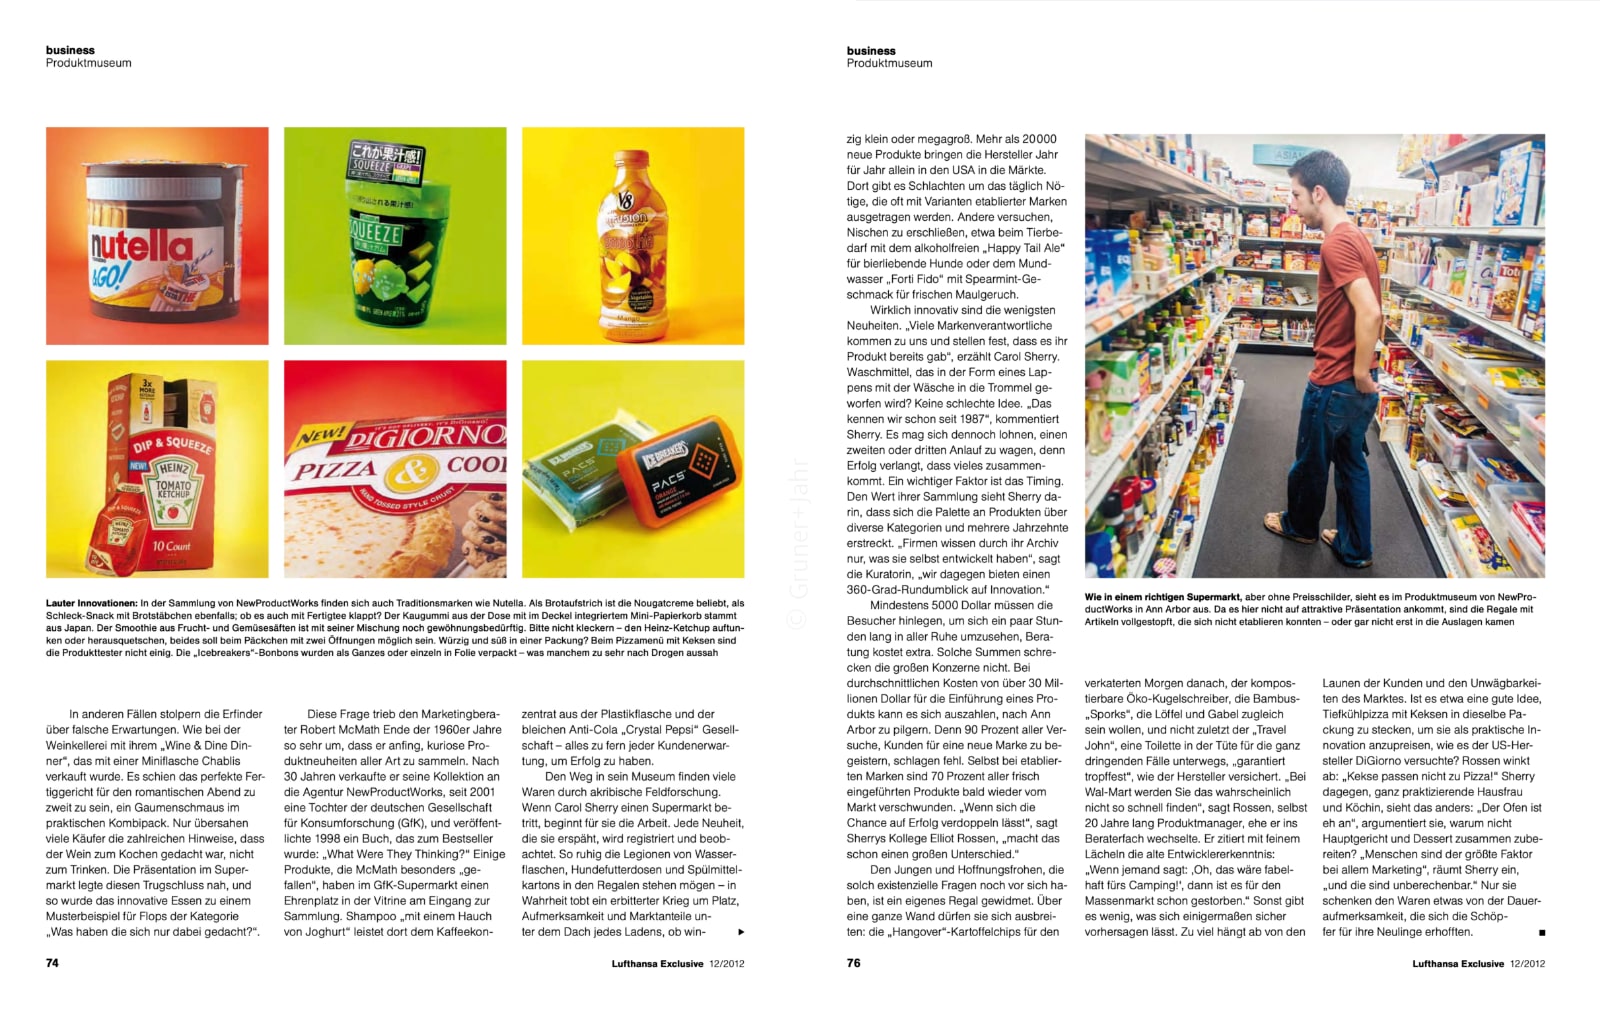 Artikel über Marktforschung und gescheiterte Produkte, GfK New Product Works, im Lufthansa-Magazin, Teil 2